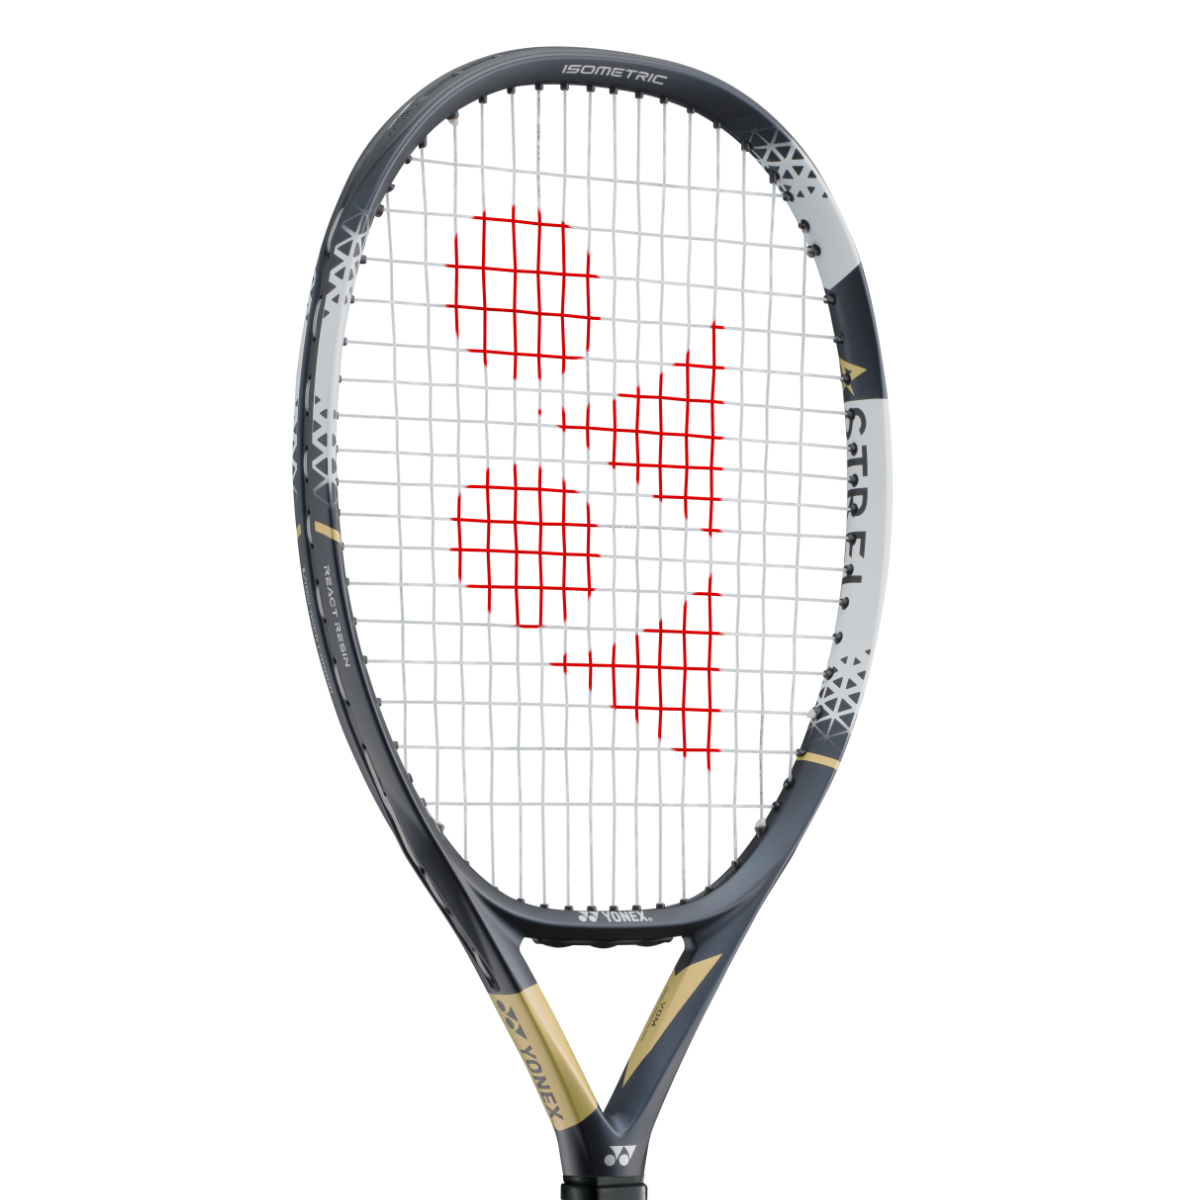 YONEX ASTREL 115 unbesaitet 260 g Raquette de tennis blanc-vert nouveau